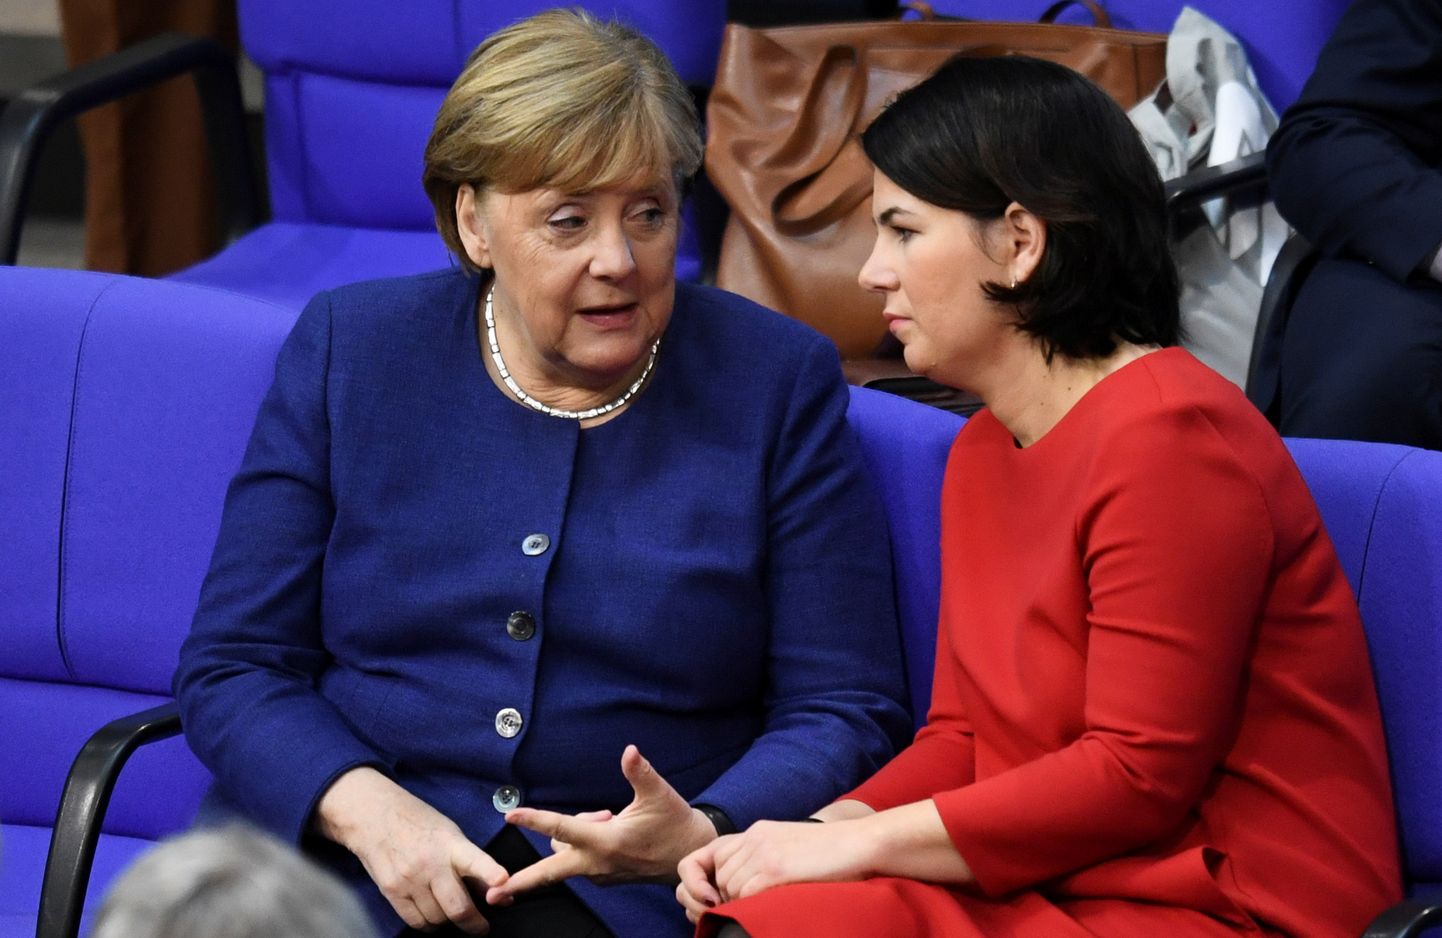 Saksa kantsler Angela Merkel ajab juttu roheliste kaasliidri Annalena Baerbockiga.